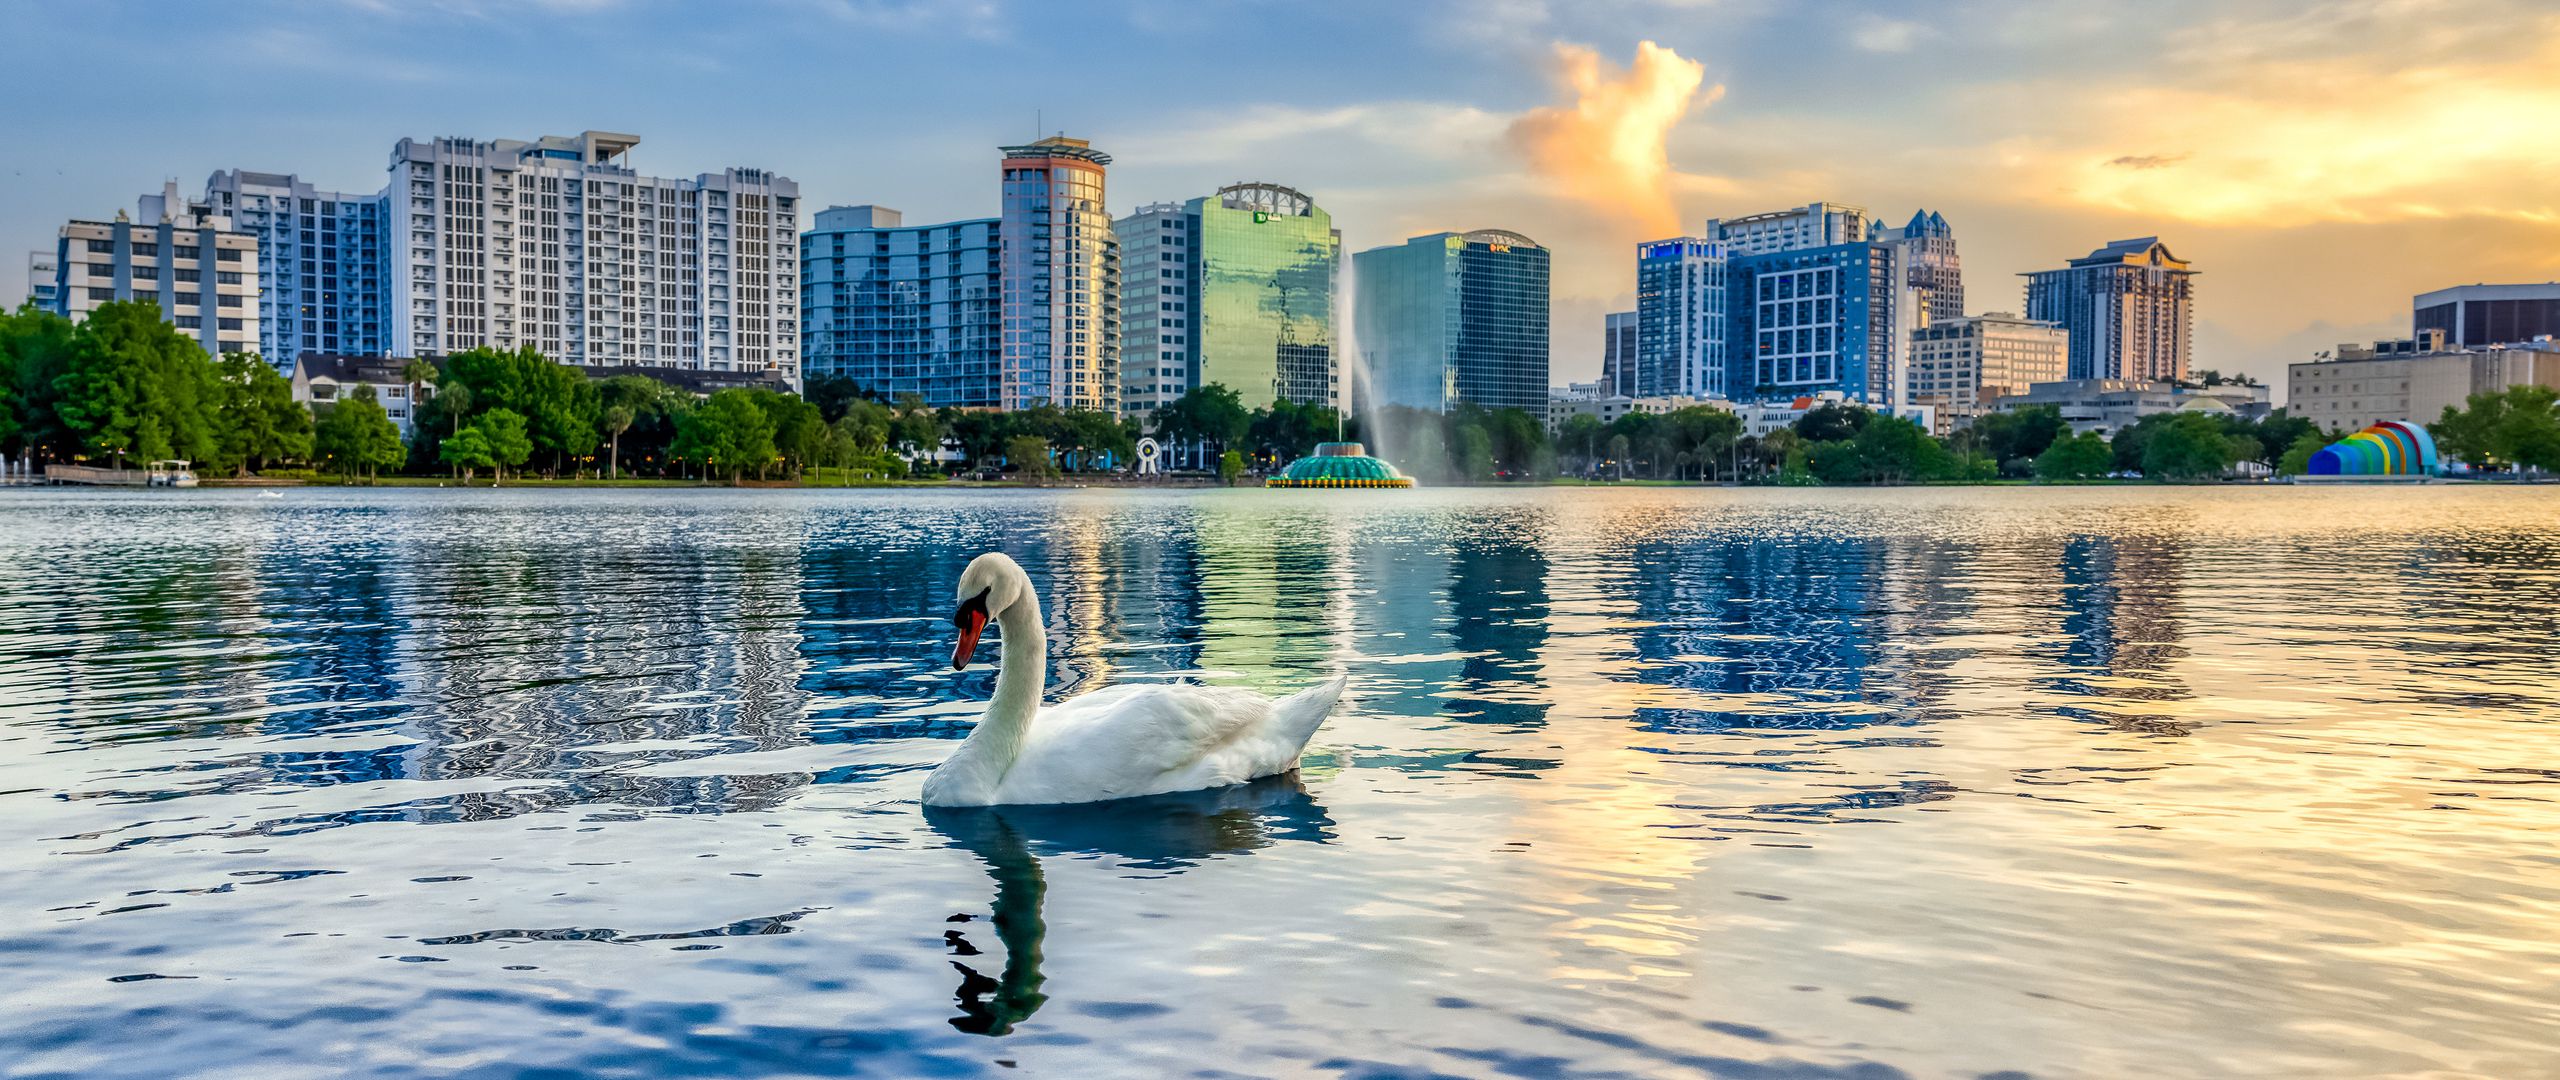 Fondos de pantalla Cisne en lago en medio de ciudad